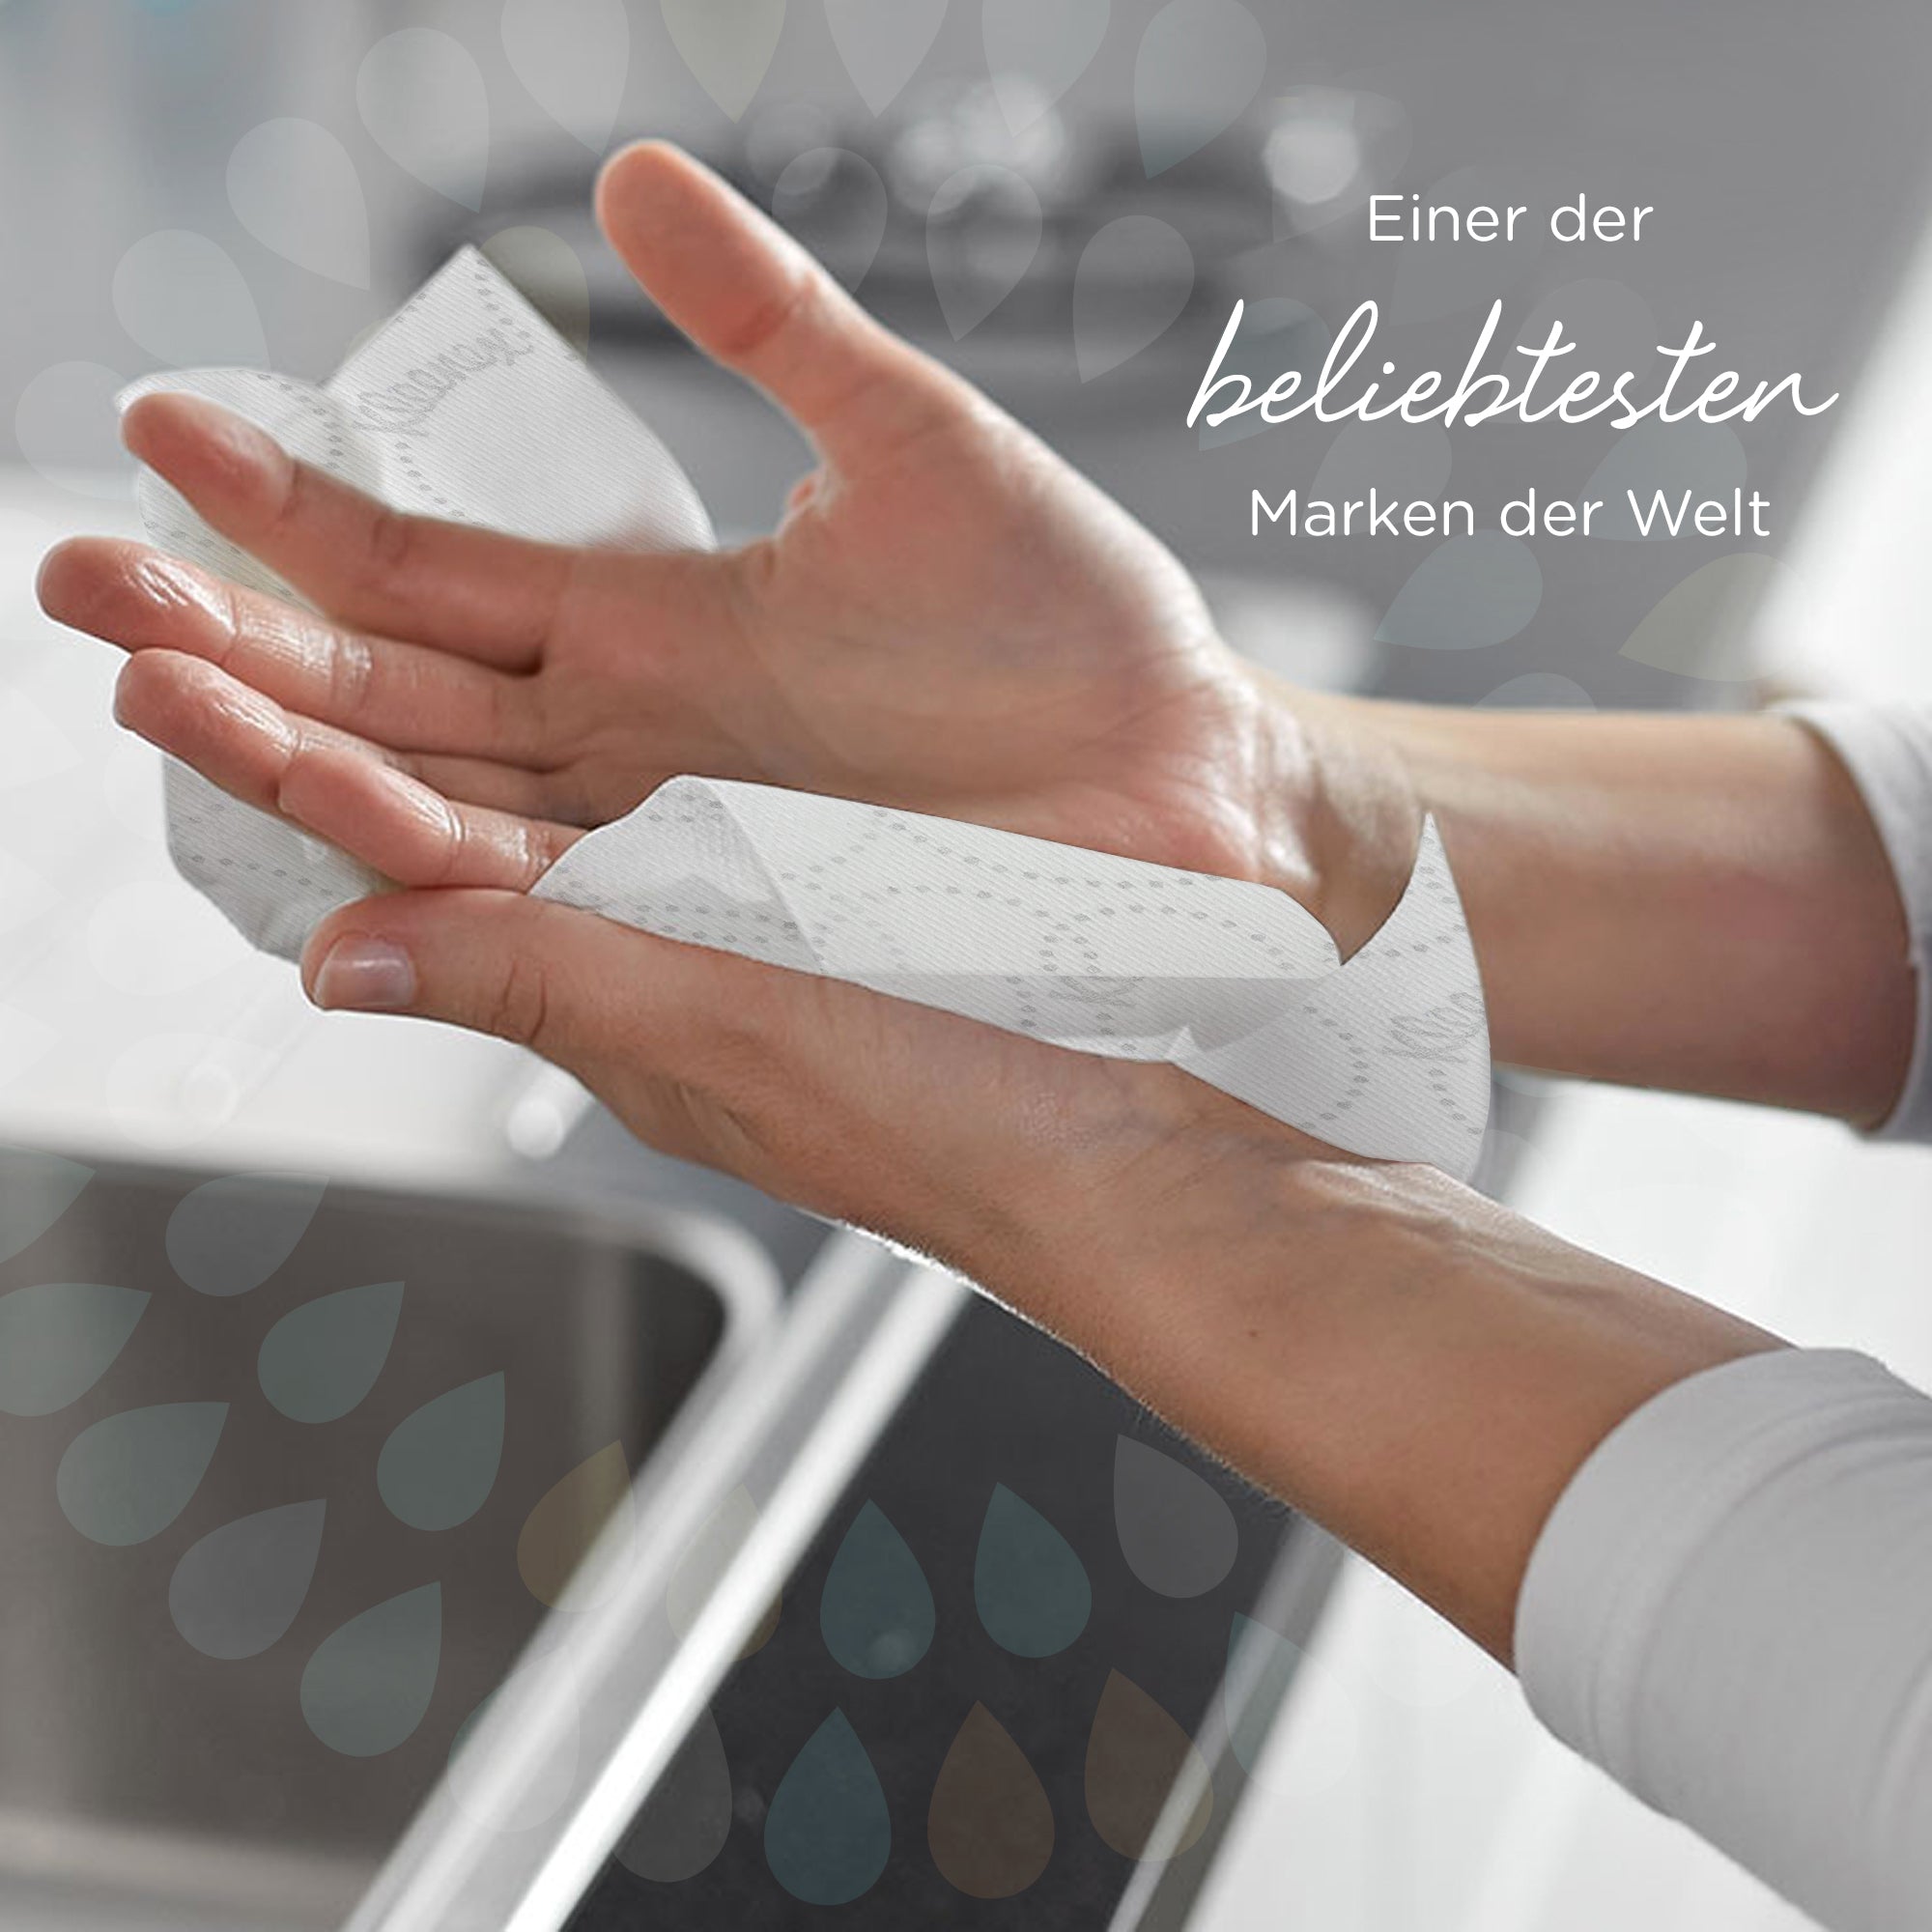 Kleenex® Ultra™ Papierhandtücher auf Rollen, 6782 – E-Roll-Großrolle für 2-lagige Handtücher – 6 x 200 m weiße Papierhandtuchrollen (insg. 1.200 m)